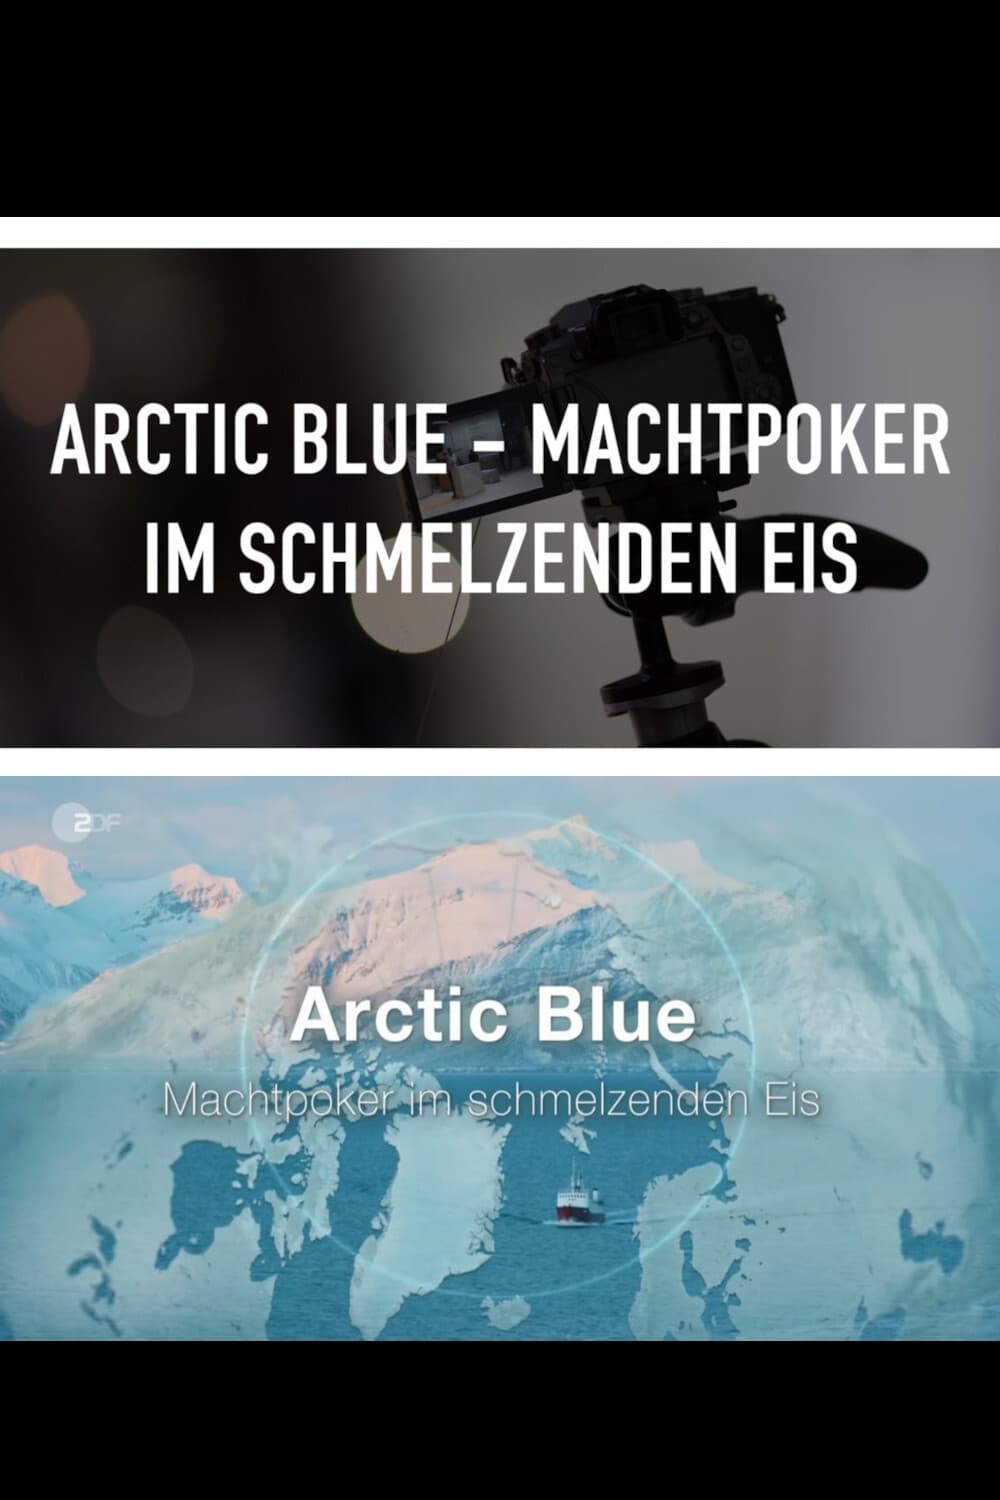 Arctic Blue - Machtpoker im schmelzenden Eis